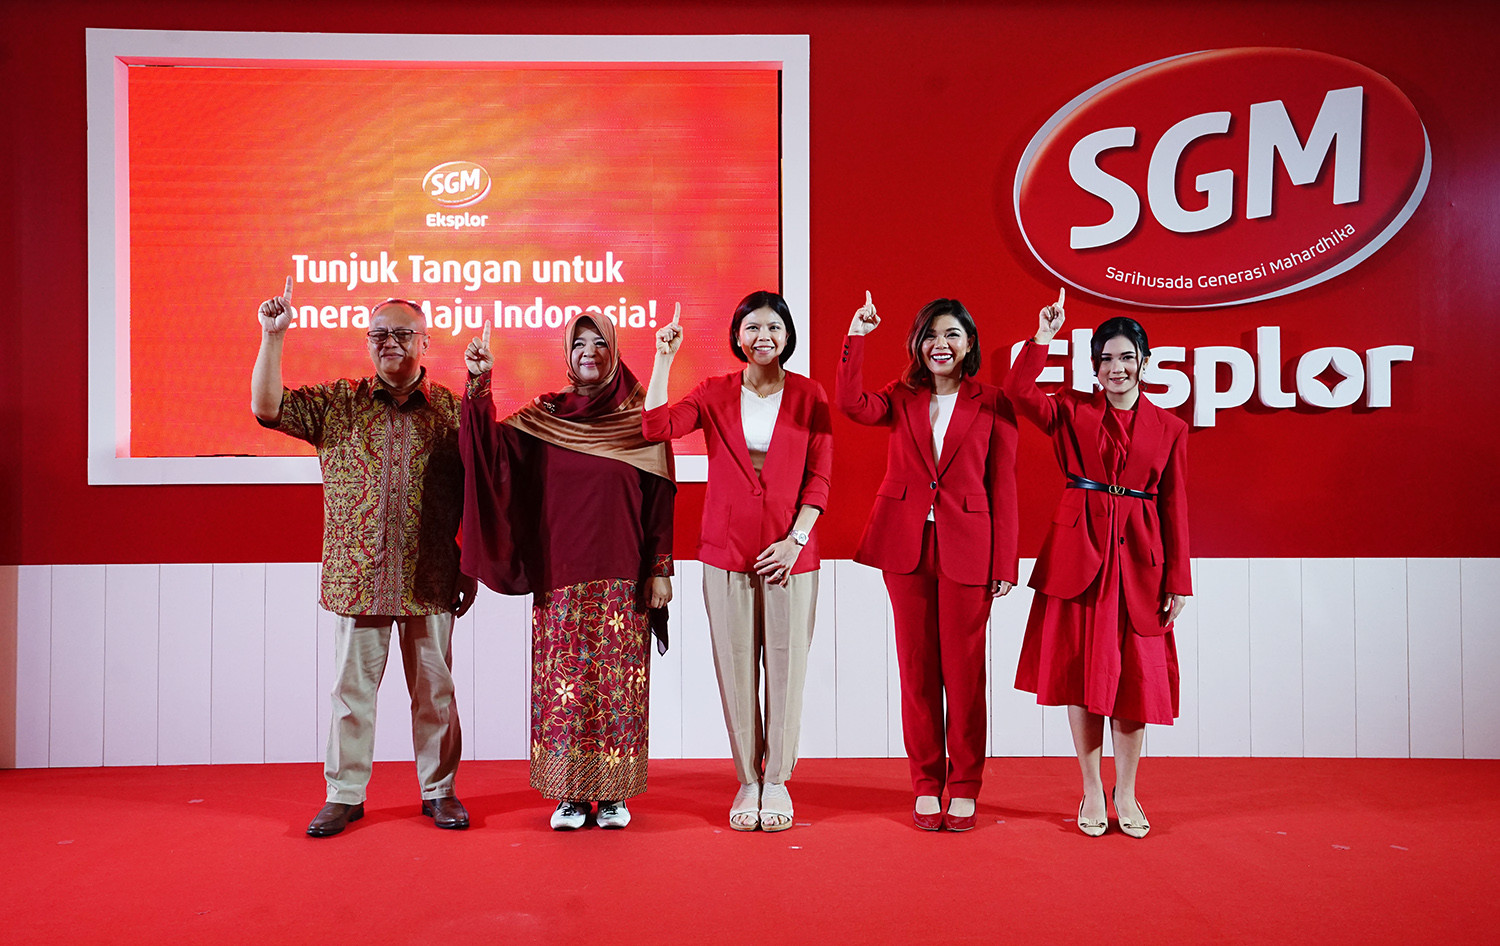 Sgm Eksplor Gelar Gerakan Sosial ‘Tunjuk Tangan Untuk Generasi Maju Indonesia’